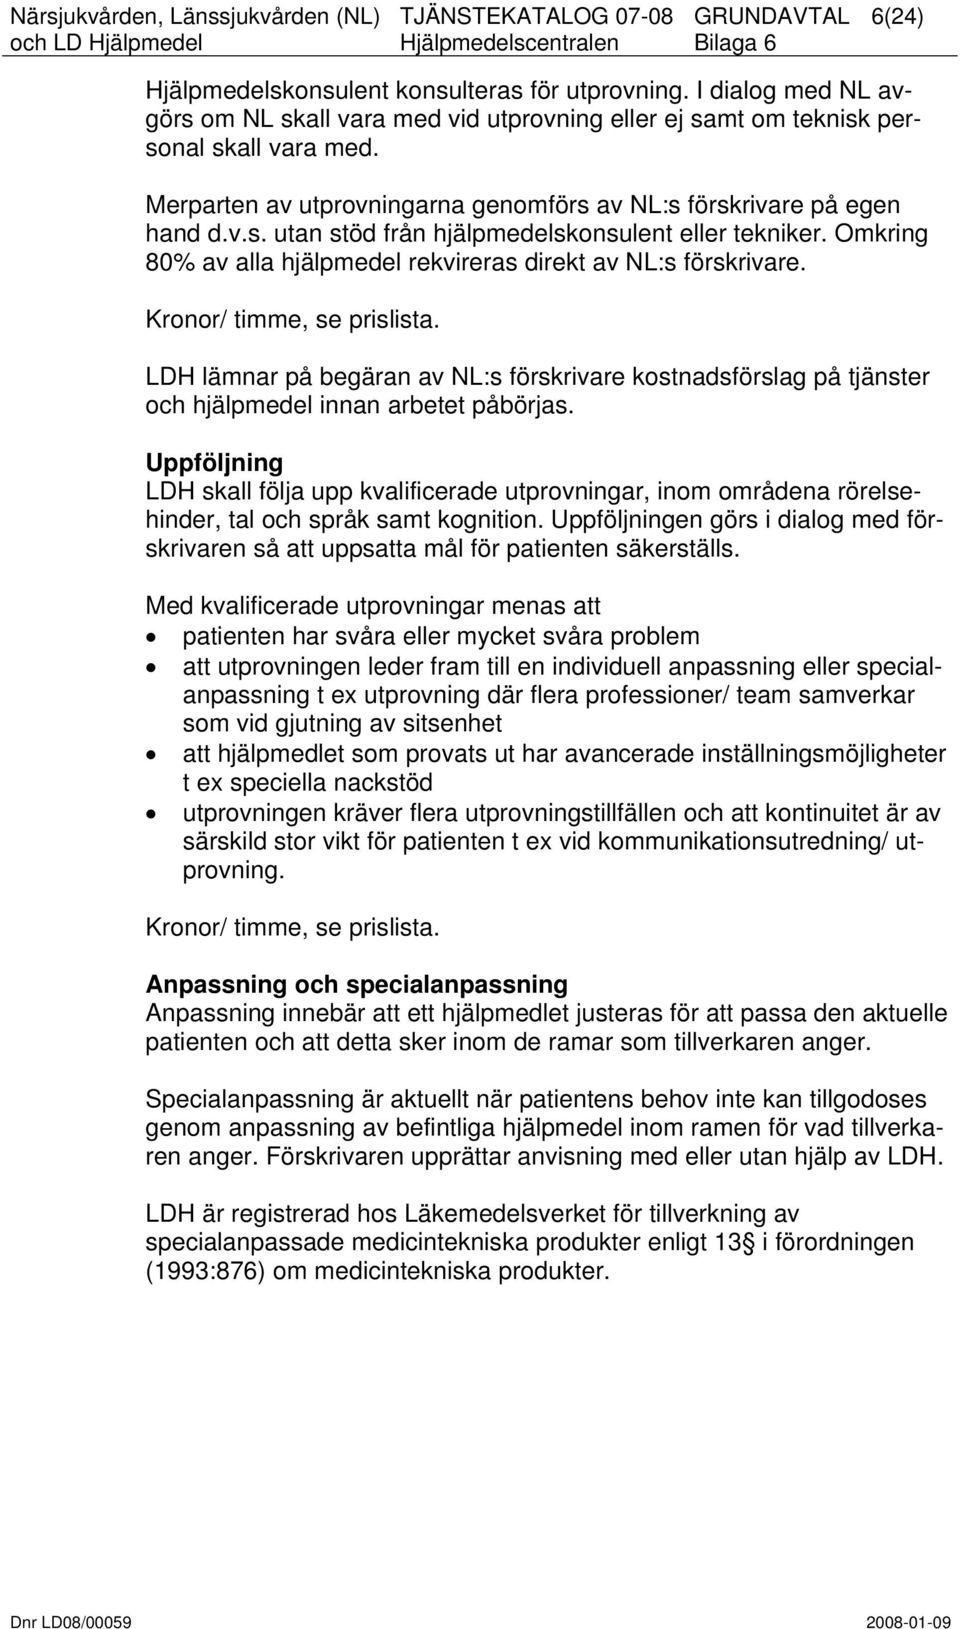 Kronor/ timme, se prislista. LDH lämnar på begäran av NL:s förskrivare kostnadsförslag på tjänster och hjälpmedel innan arbetet påbörjas.